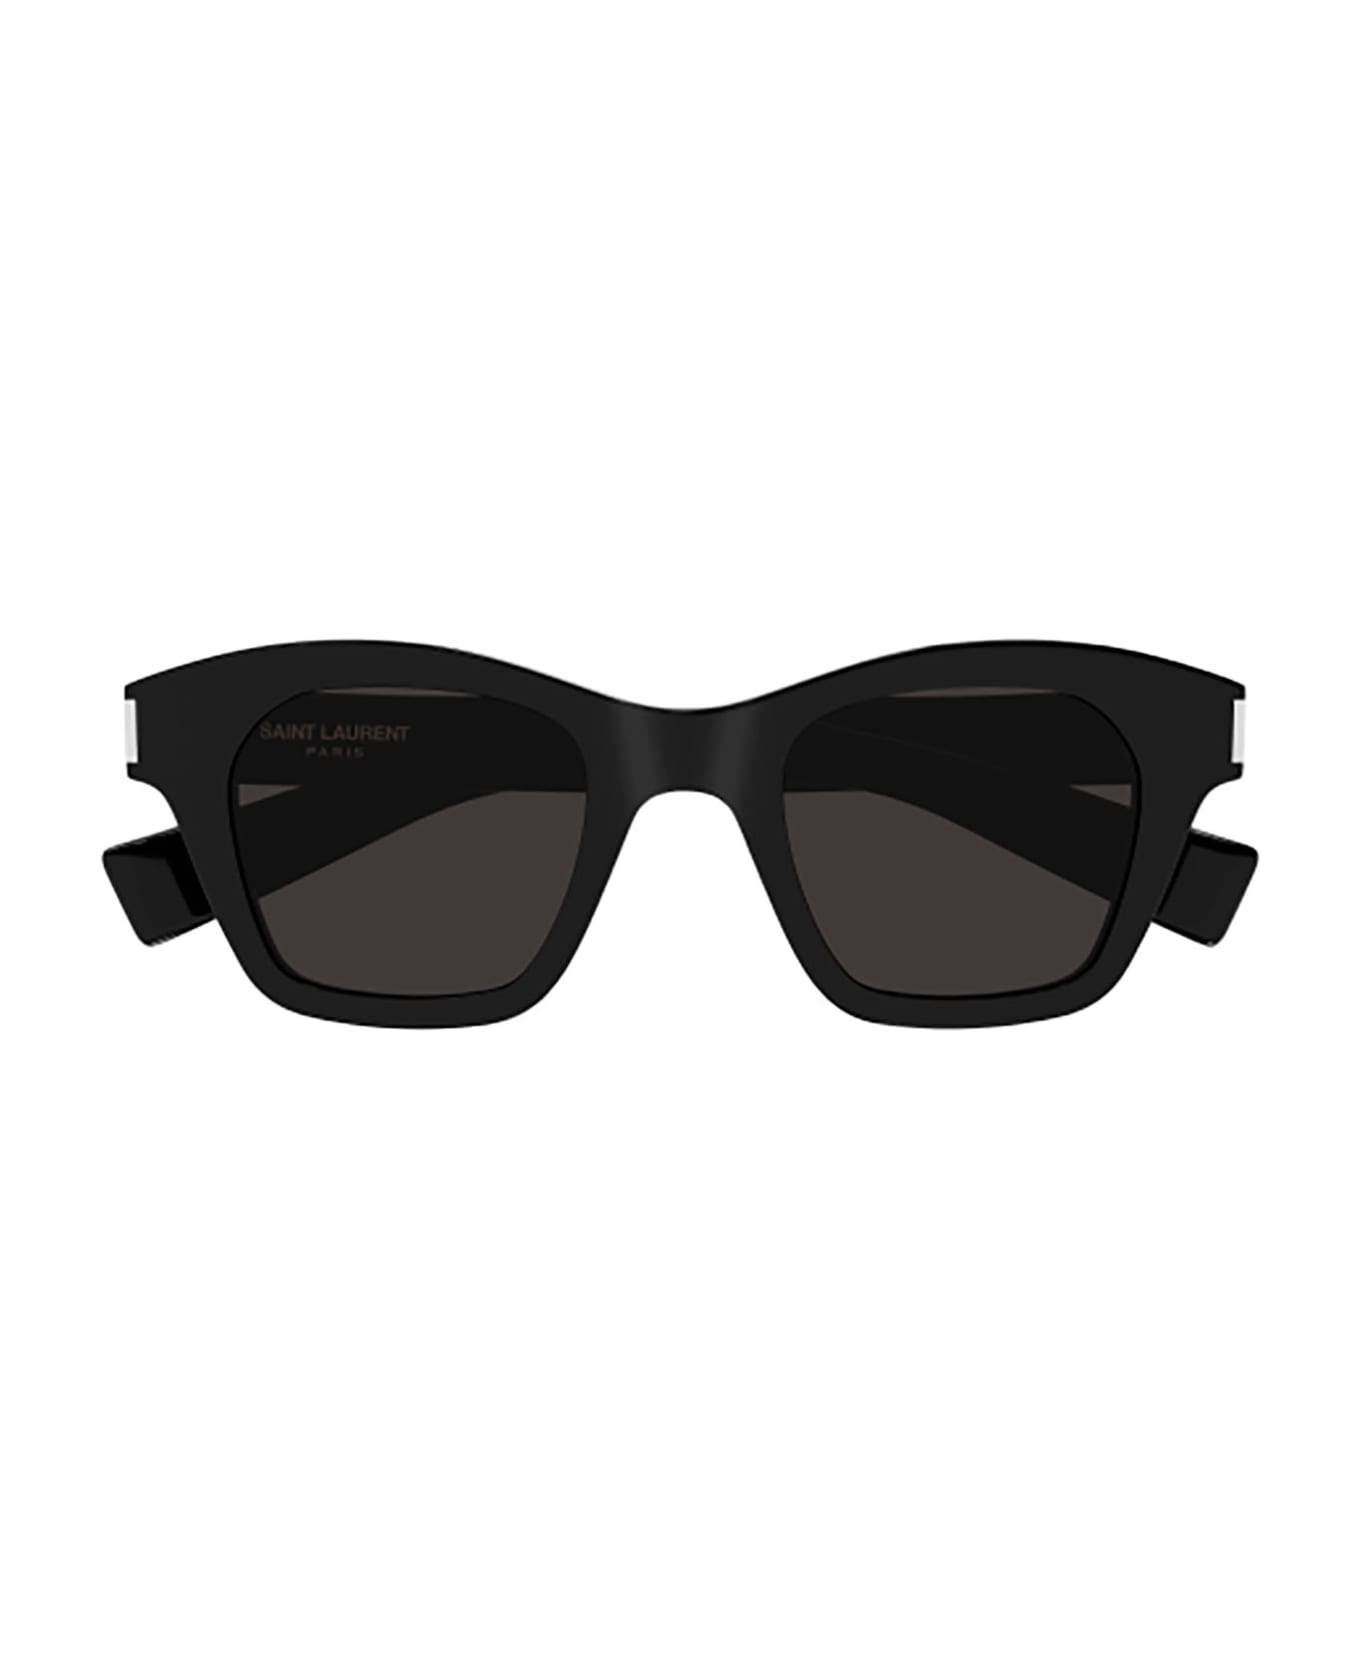 Saint Laurent Eyewear Sl 592 Sunglasses - 001 black black black